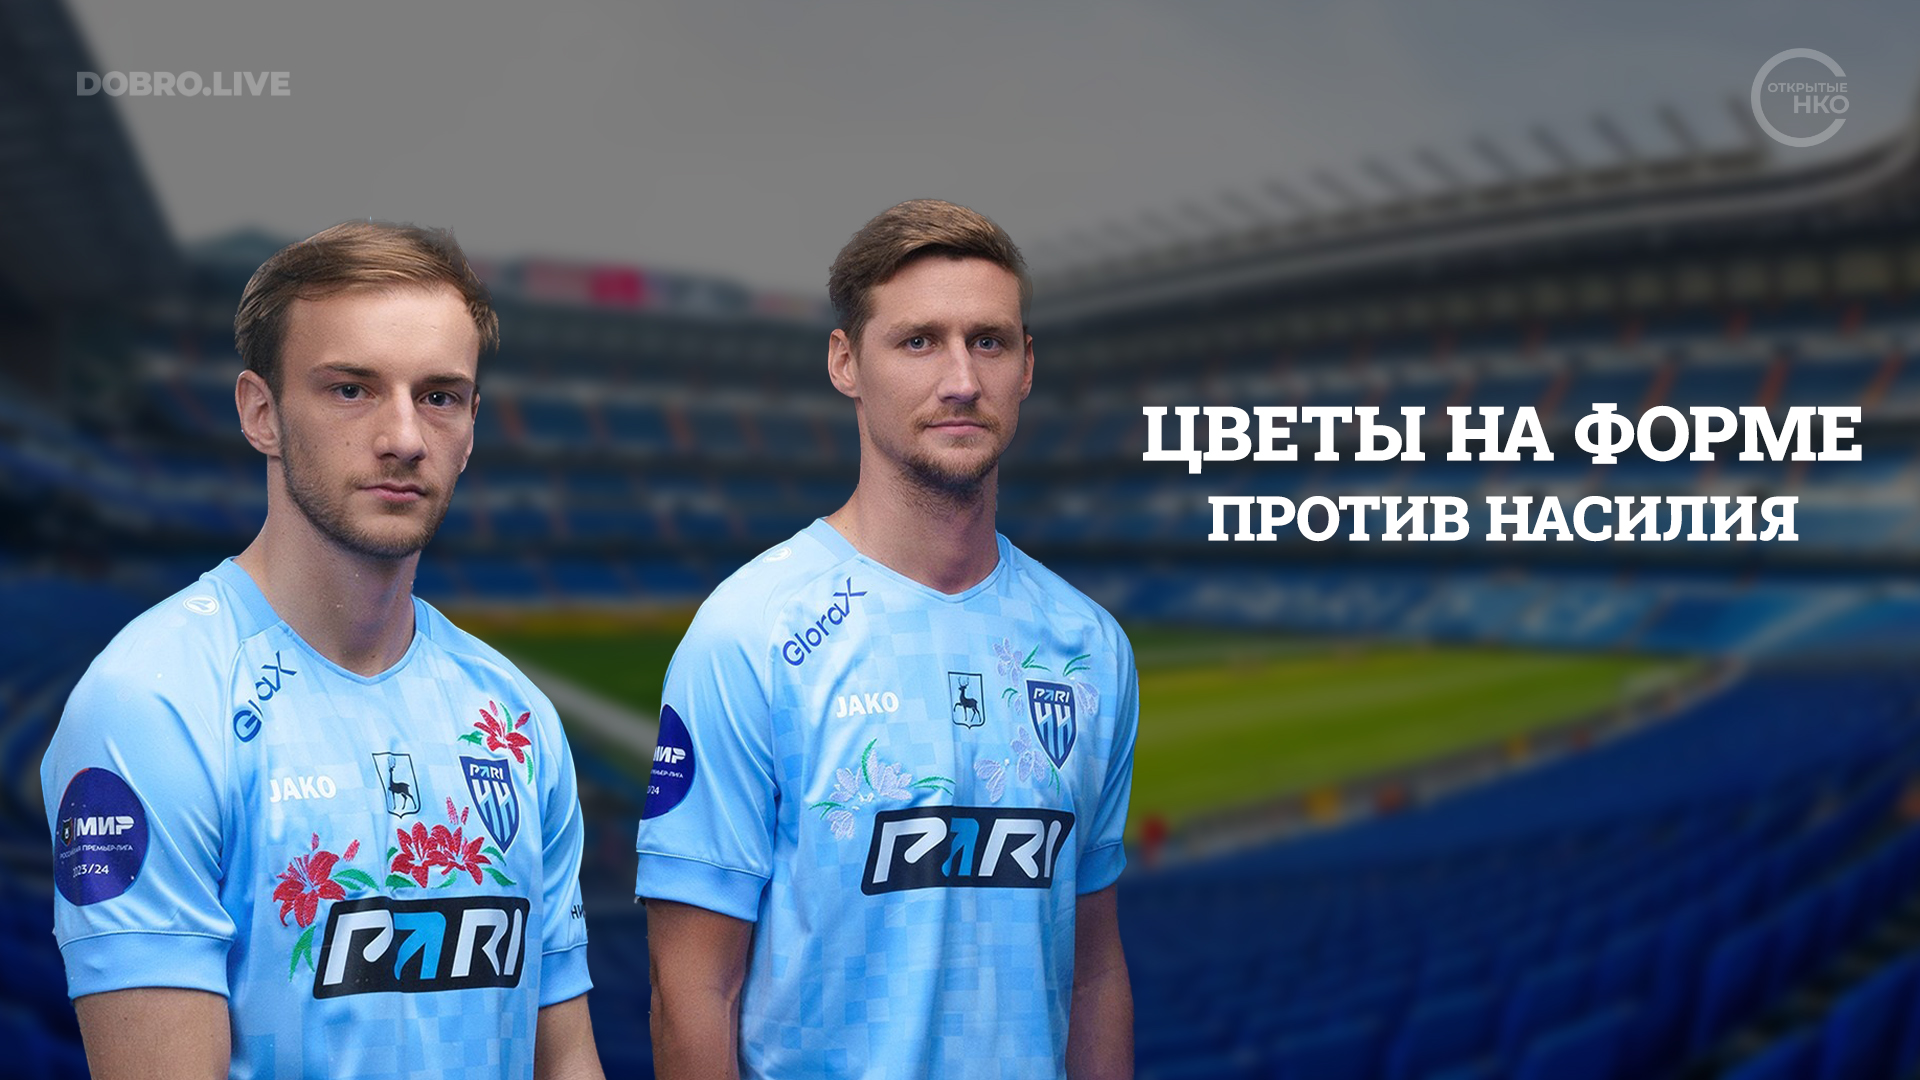 Нижегородские футболисты вышли на поле в футболках с вышитыми цветами